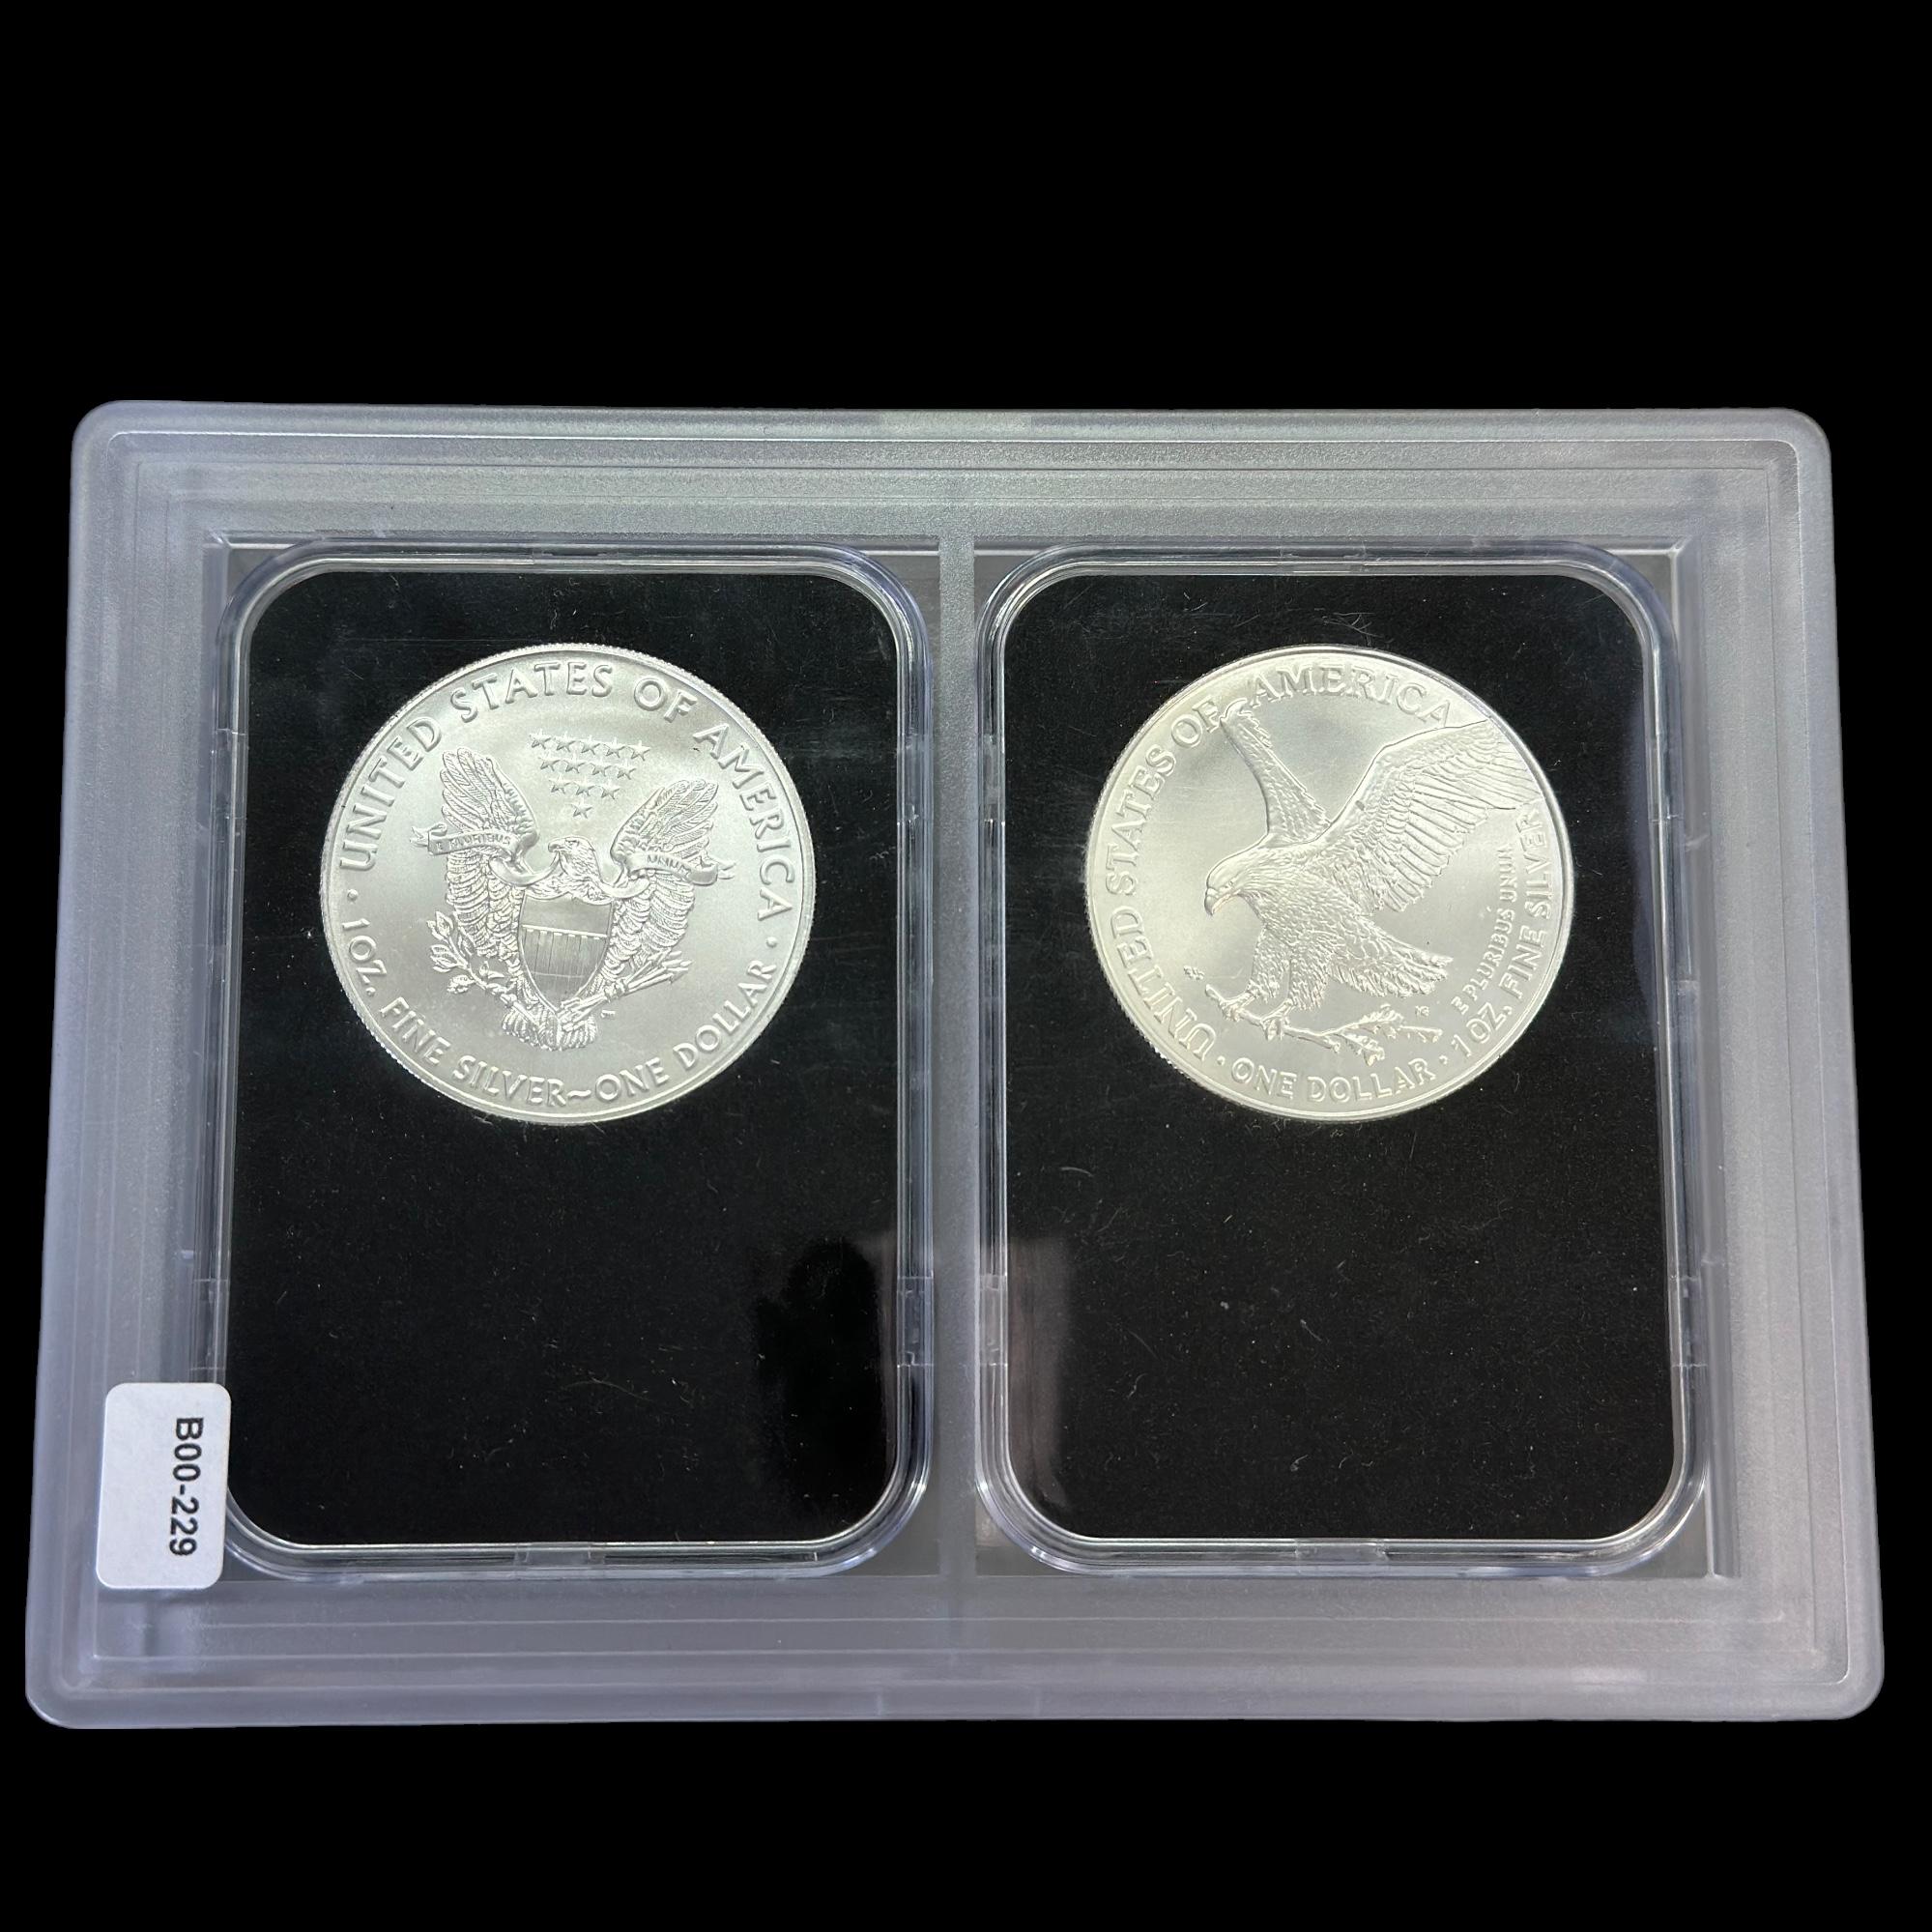 Pair of certified 2021 U.S. American Eagle silver dollars